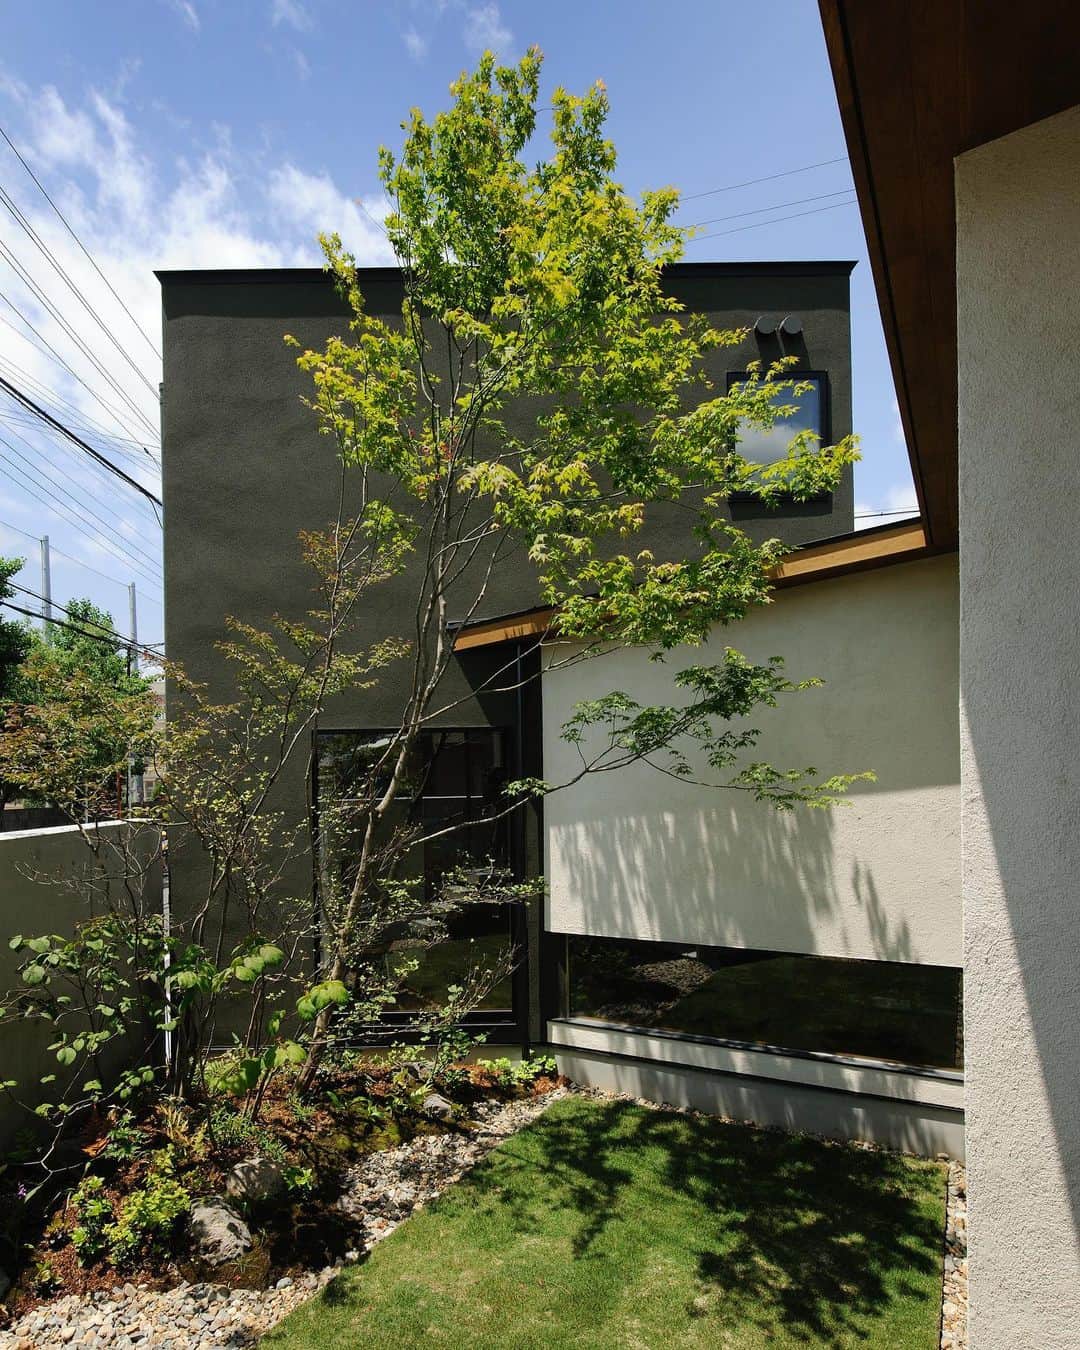 ザウス住宅プロデュースのインスタグラム：「…中庭のある家：大阪    •  建物を花器に見立て繊細な樹木を用い、生け花のように配することで庭と建物の良さを引き立てています。 　　　 設計：株式会社フジハラアーキテクツ 撮影：杉野圭   　　　 #中庭のある家 #藤原誠司 #杉野圭 #荻野寿也 #ザウス#建築#建築家との家づくり#暮らしを楽しむ #home#architecture#design#zaus 　 Merry🎄✨Christmas  2020.12.25」